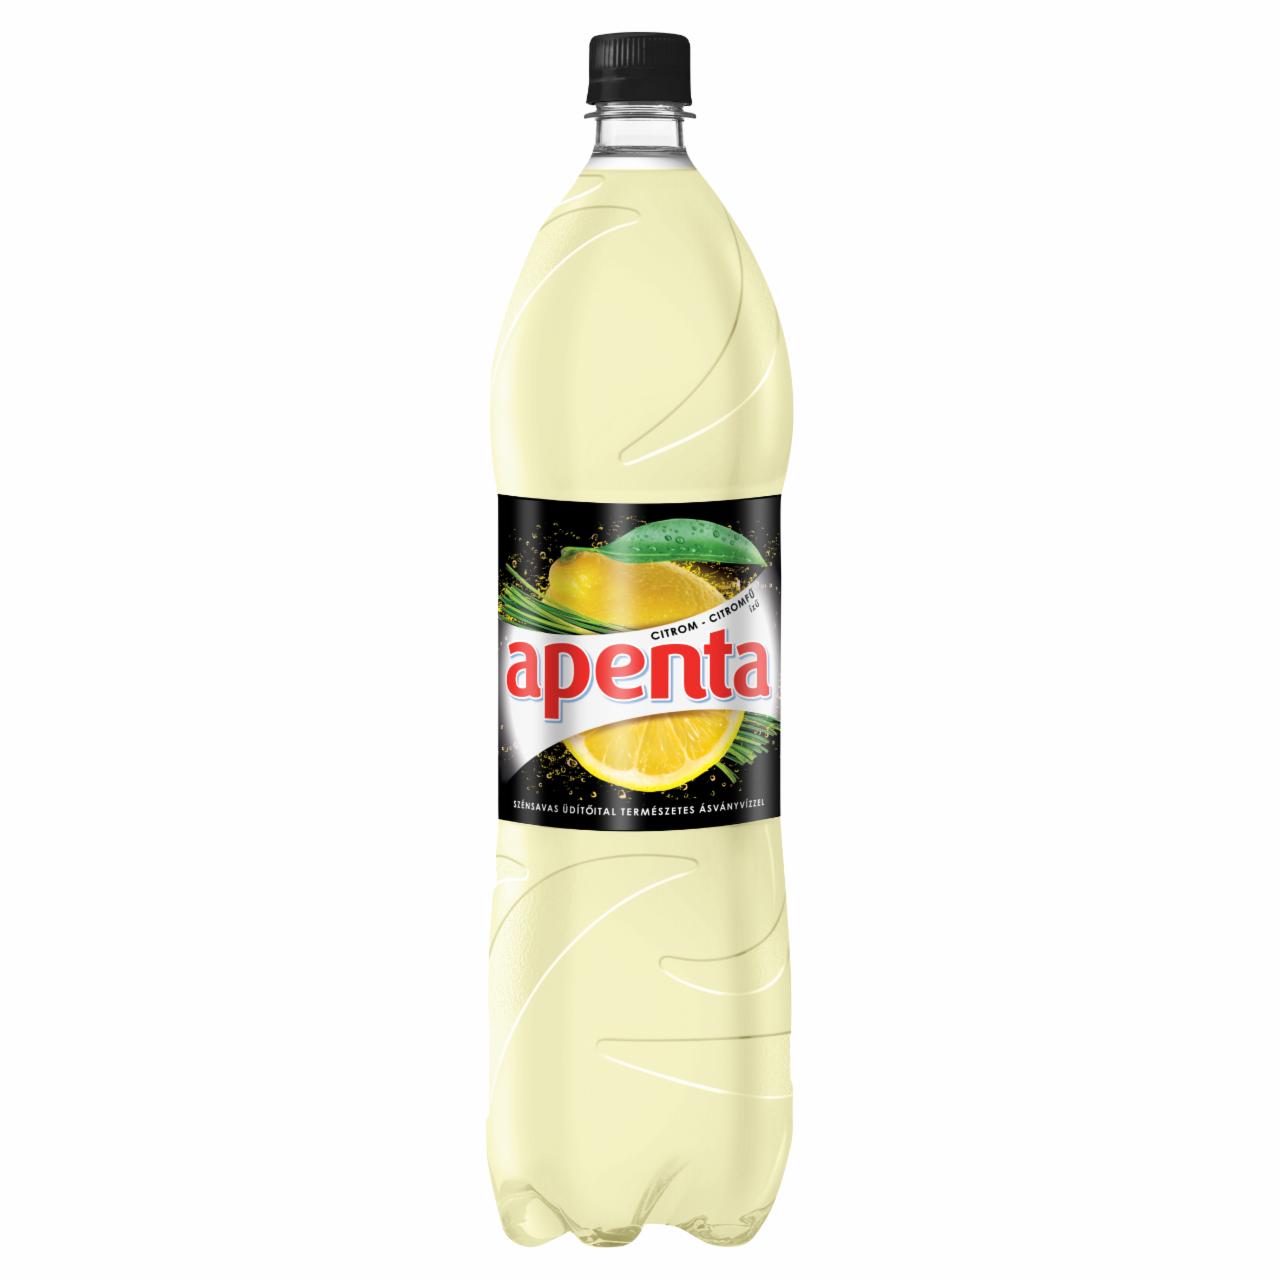 Képek - Apenta Exotic citrom-citromfű ízű szénsavas üdítőital cukorral és édesítőszerekkel 1,5 l